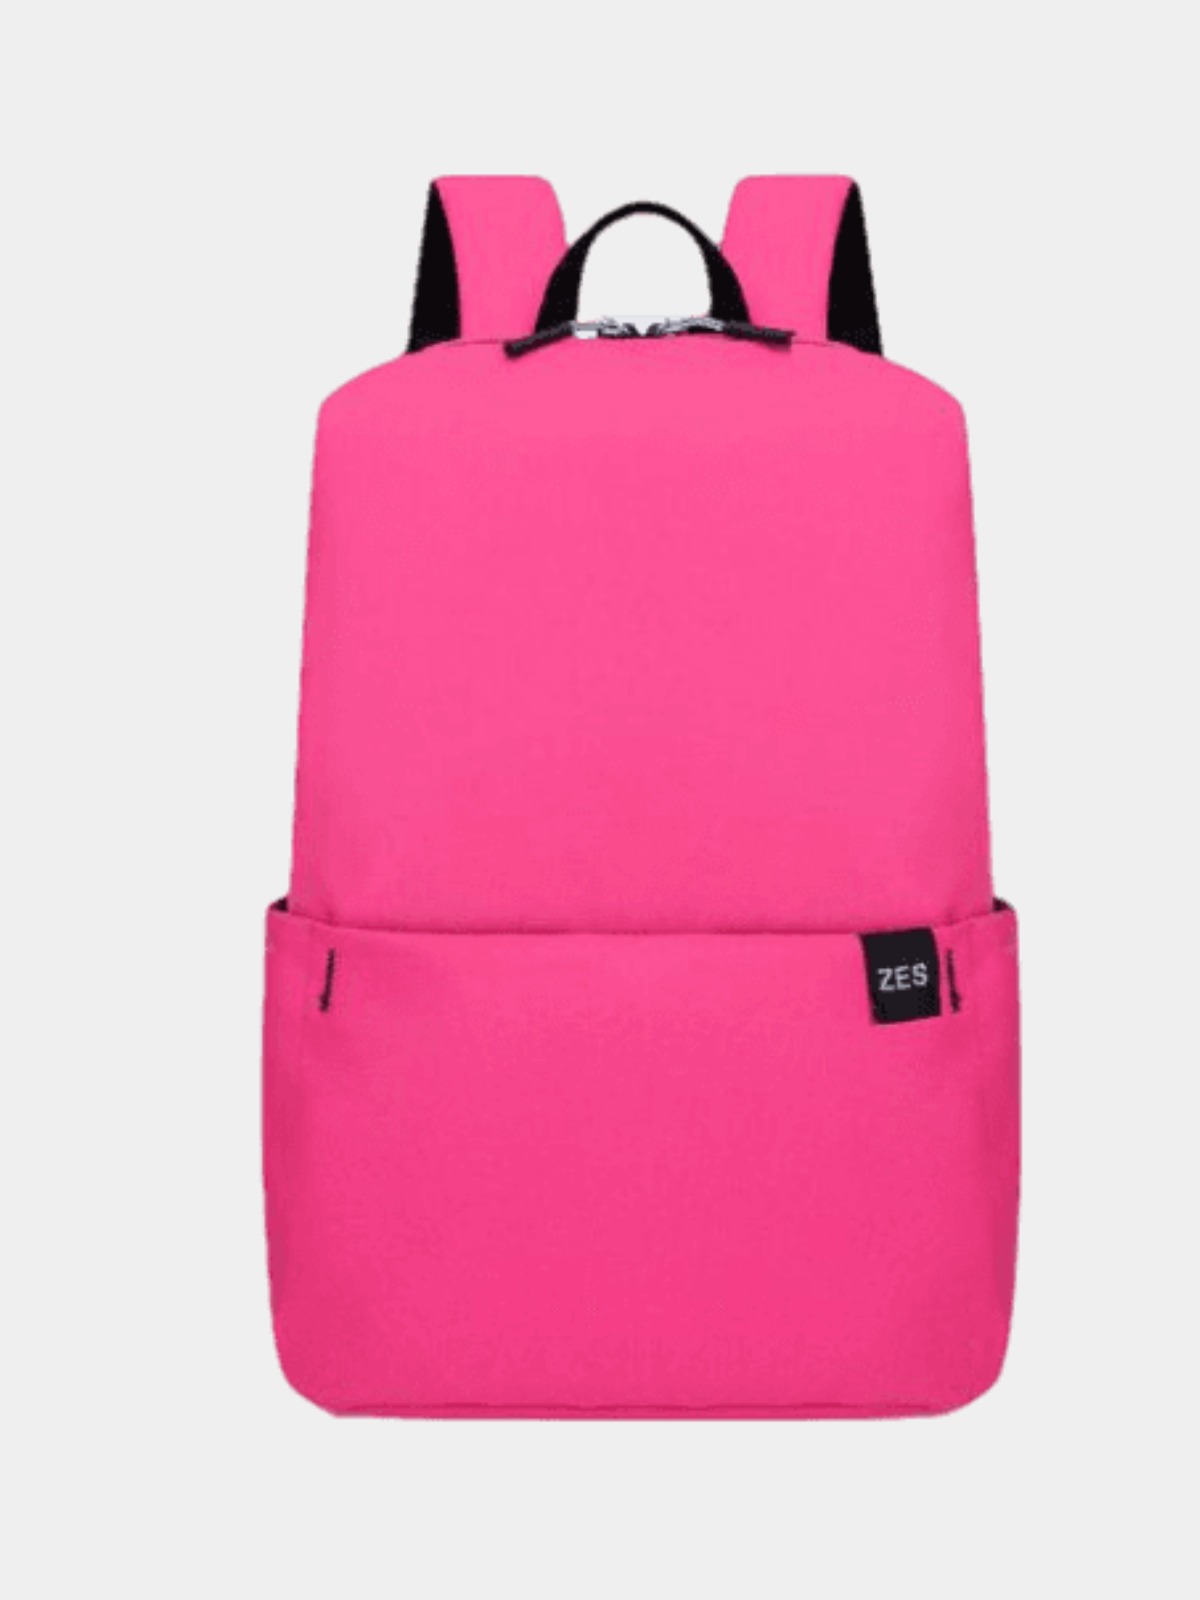 Рюкзак унисекс 2ChC10 розовый, 43х28х15 см